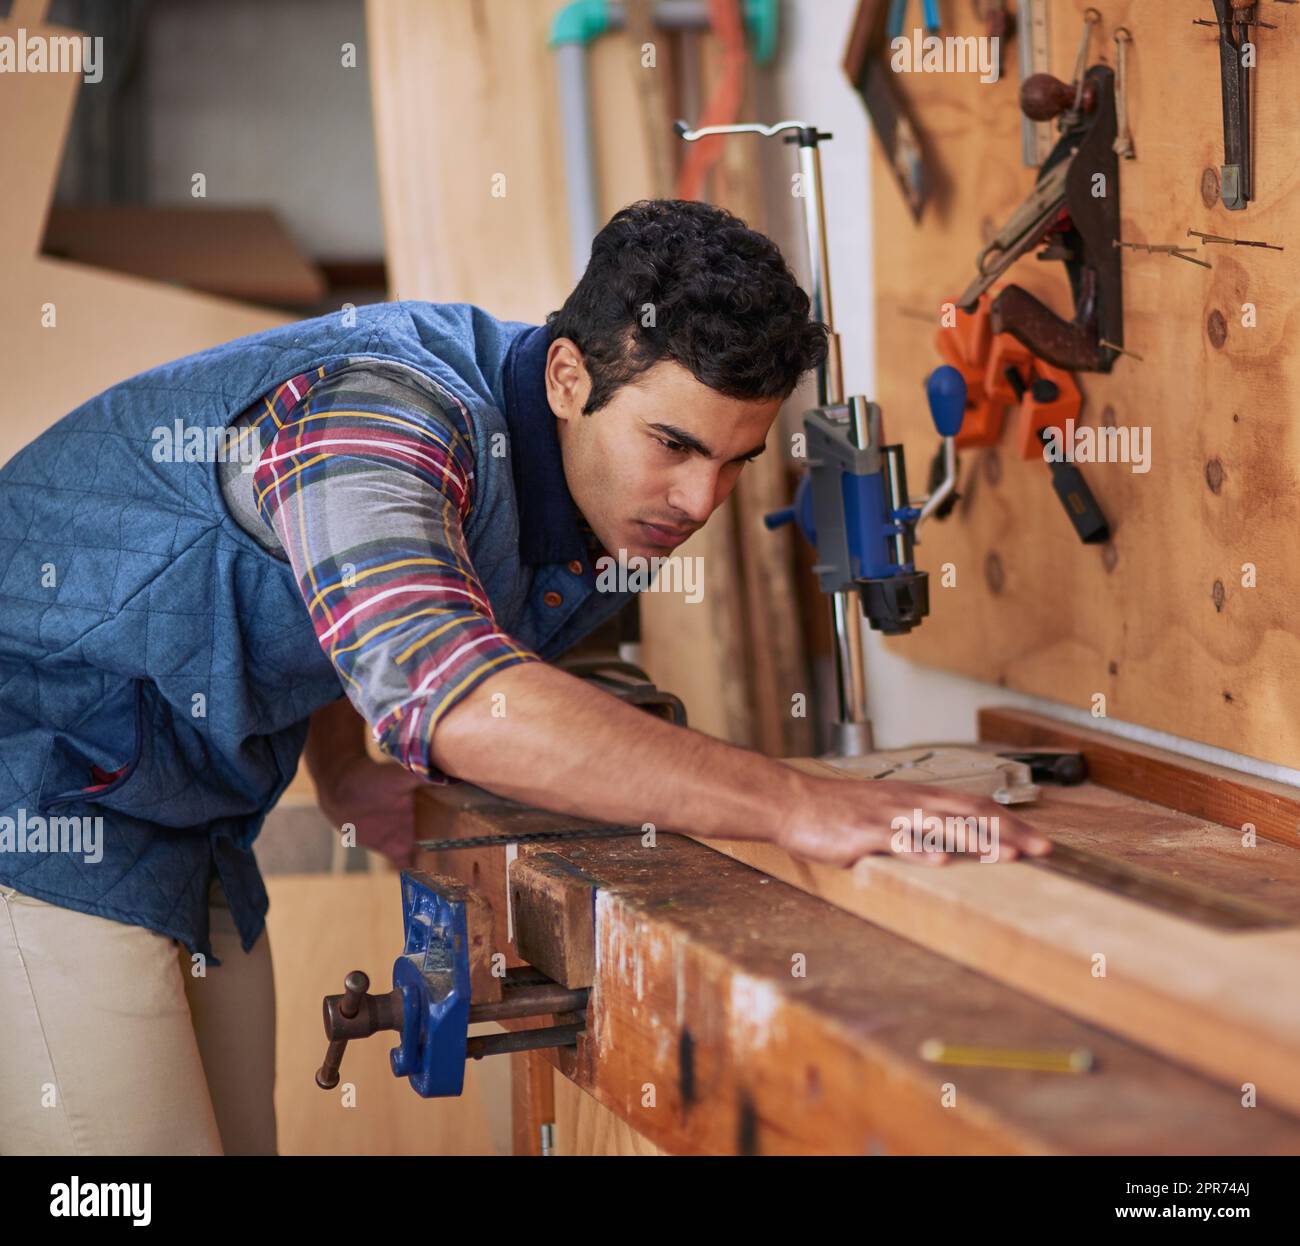 Details machen den Unterschied. Aufnahme eines fokussierten Handwerkers, der während der Arbeit in seiner Werkstatt ein Stück Holz misst. Stockfoto